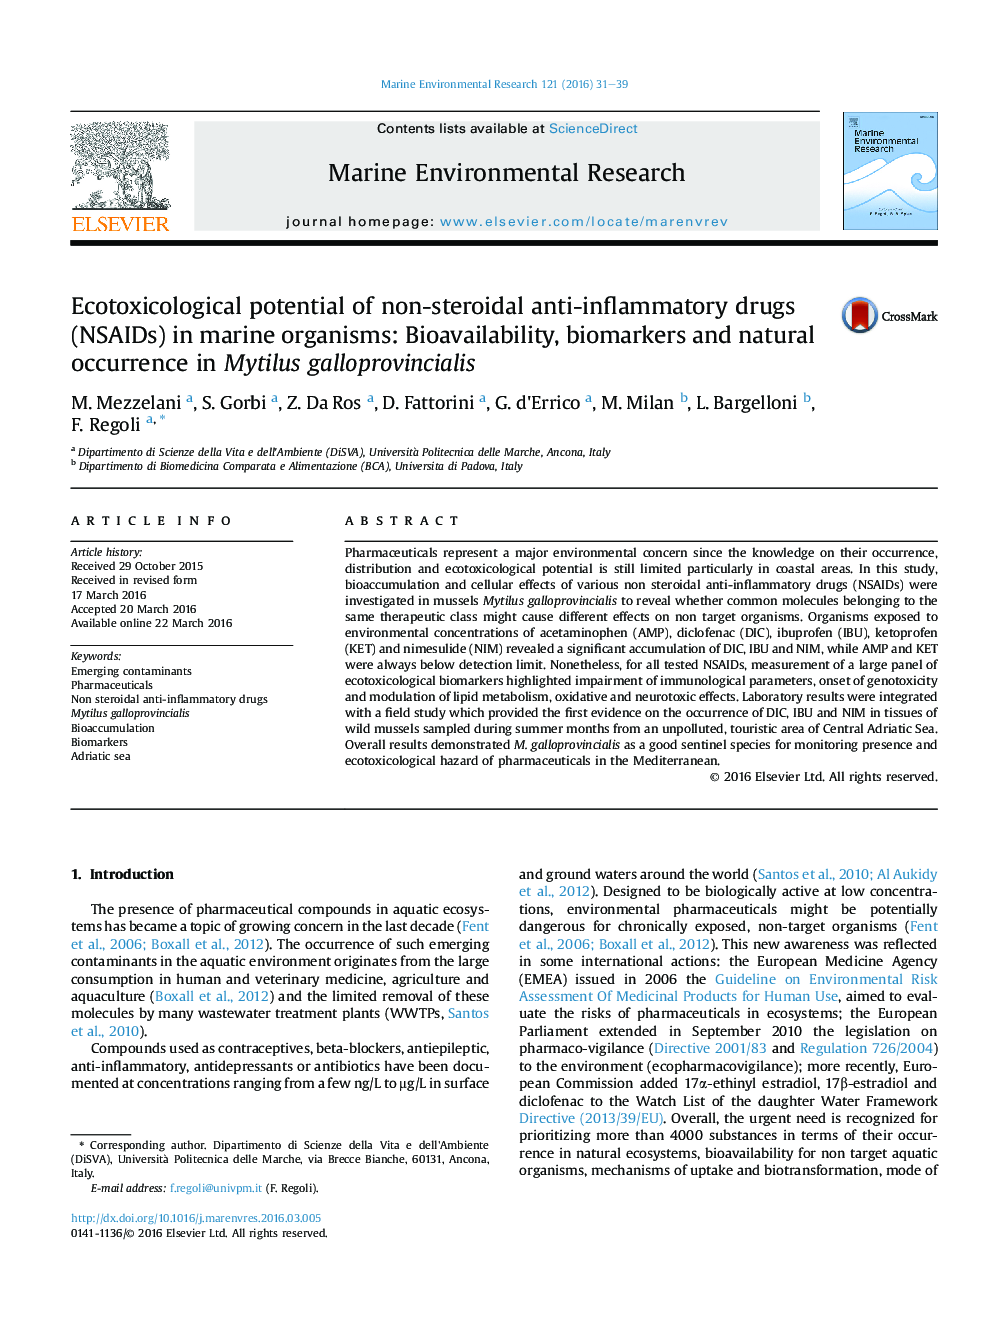 پتانسیل Ecotoxicological داروهای غیراستروئیدی ضدالتهابی(NSAIDs) در موجودات دریایی: فراهمی زیستی، نشانگرهای زیستی و وقوع طبیعی در صدف‌های سیاه galloprovincialis